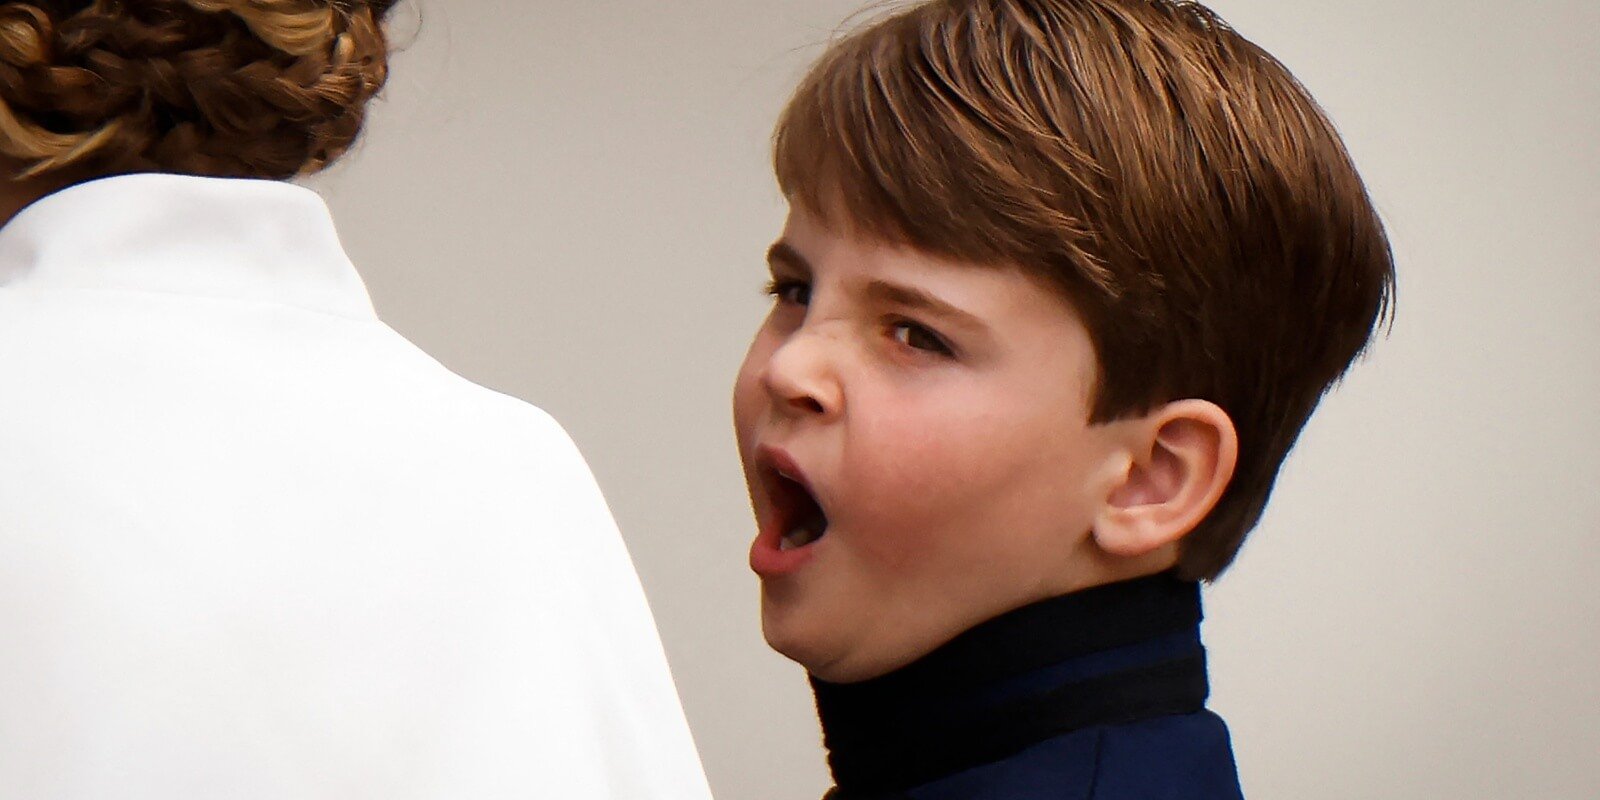 Prince Louis yawns at King Charles' coronation on May 6, 2023.